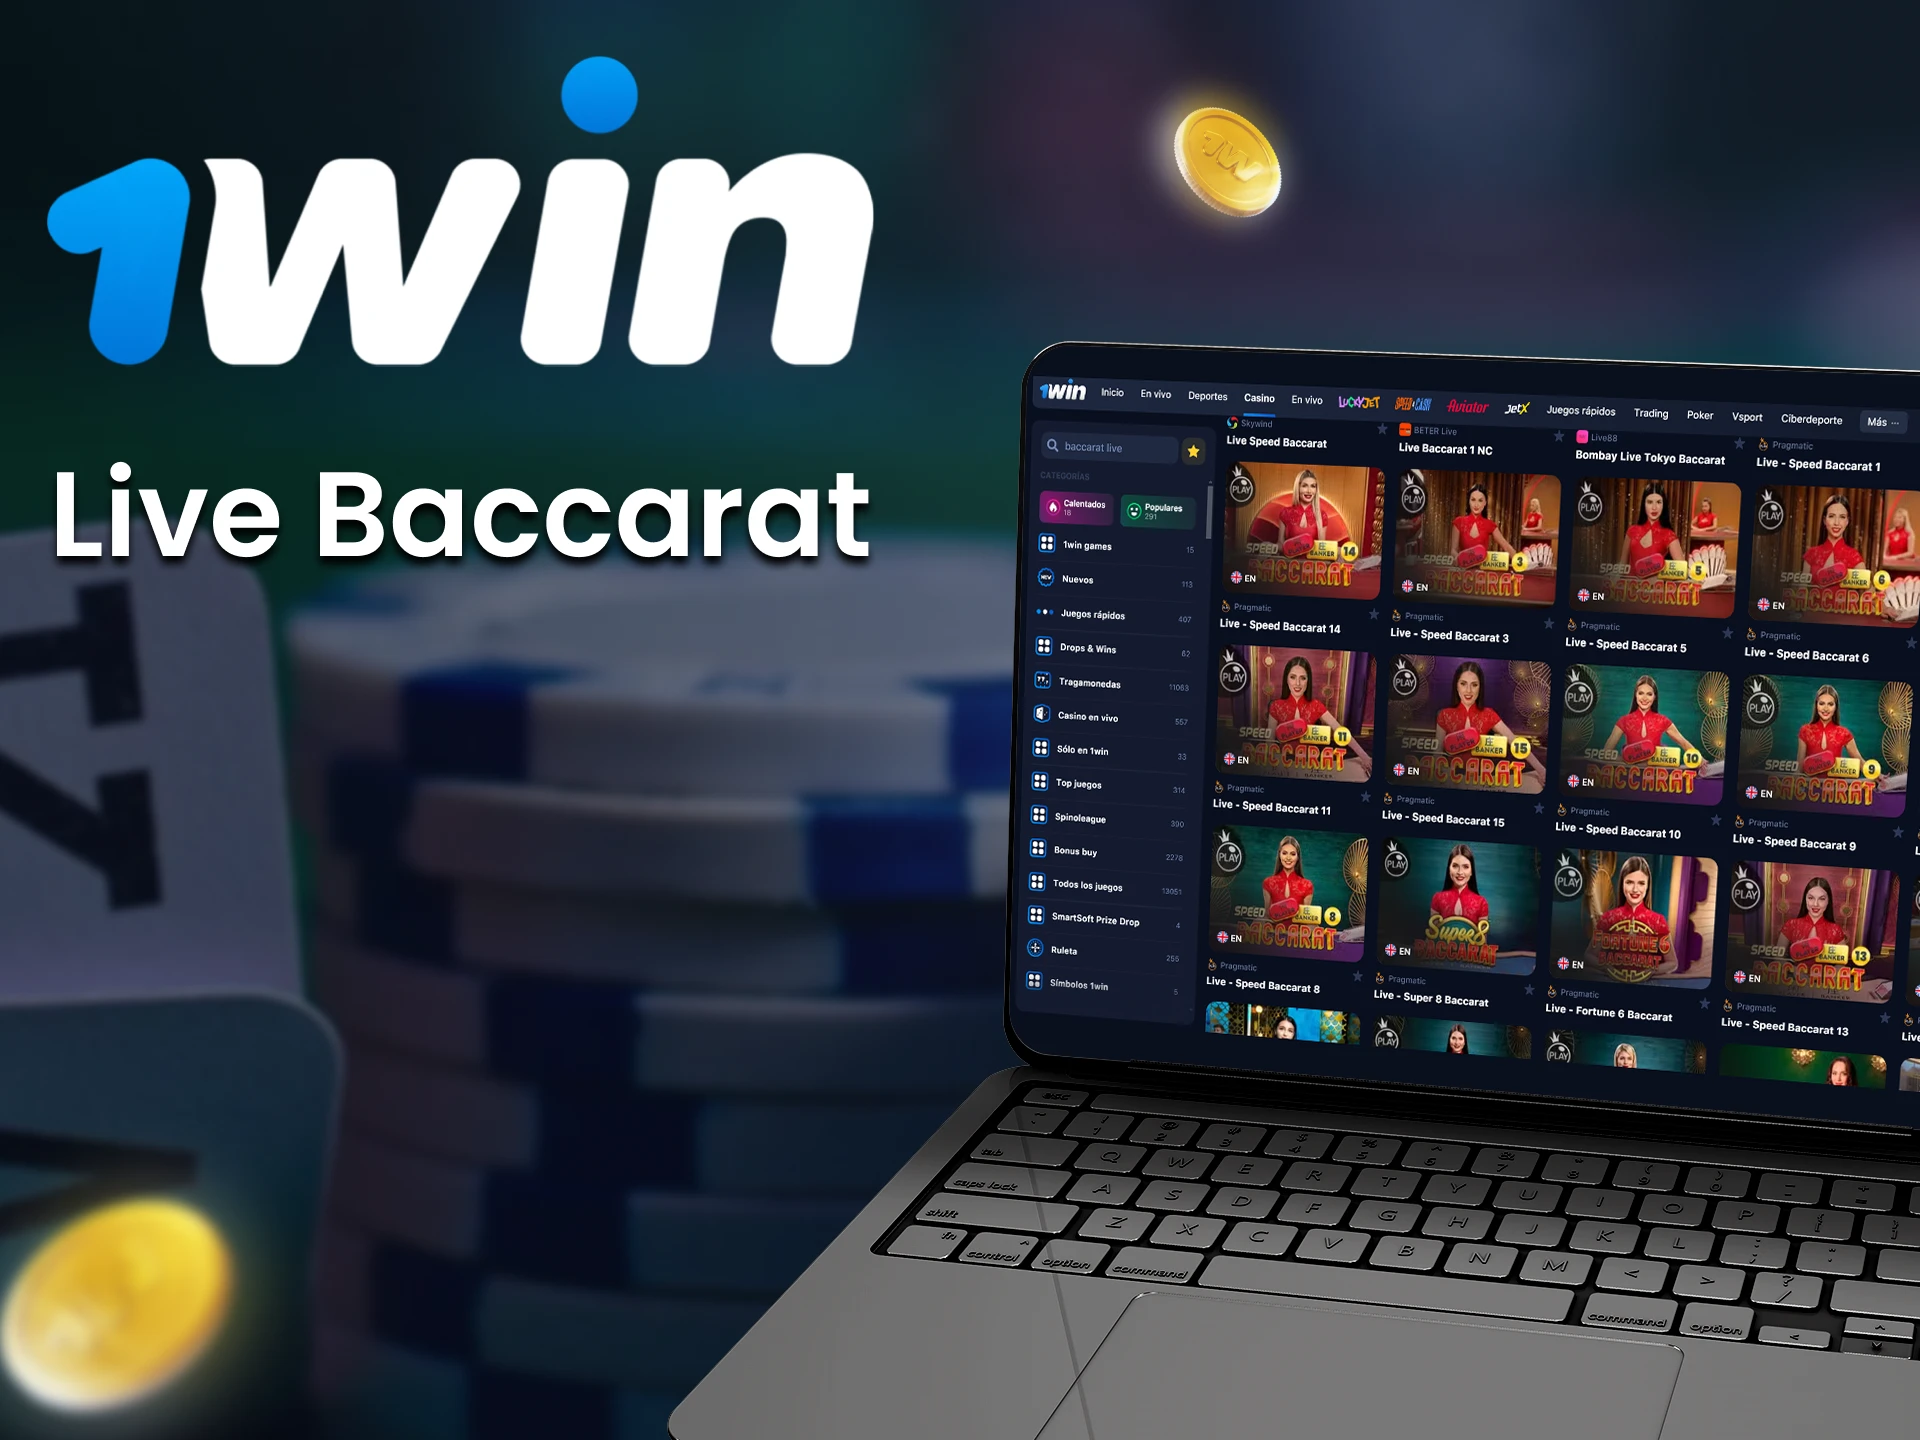 En el casino 1win puedes jugar baccarat en vivo.